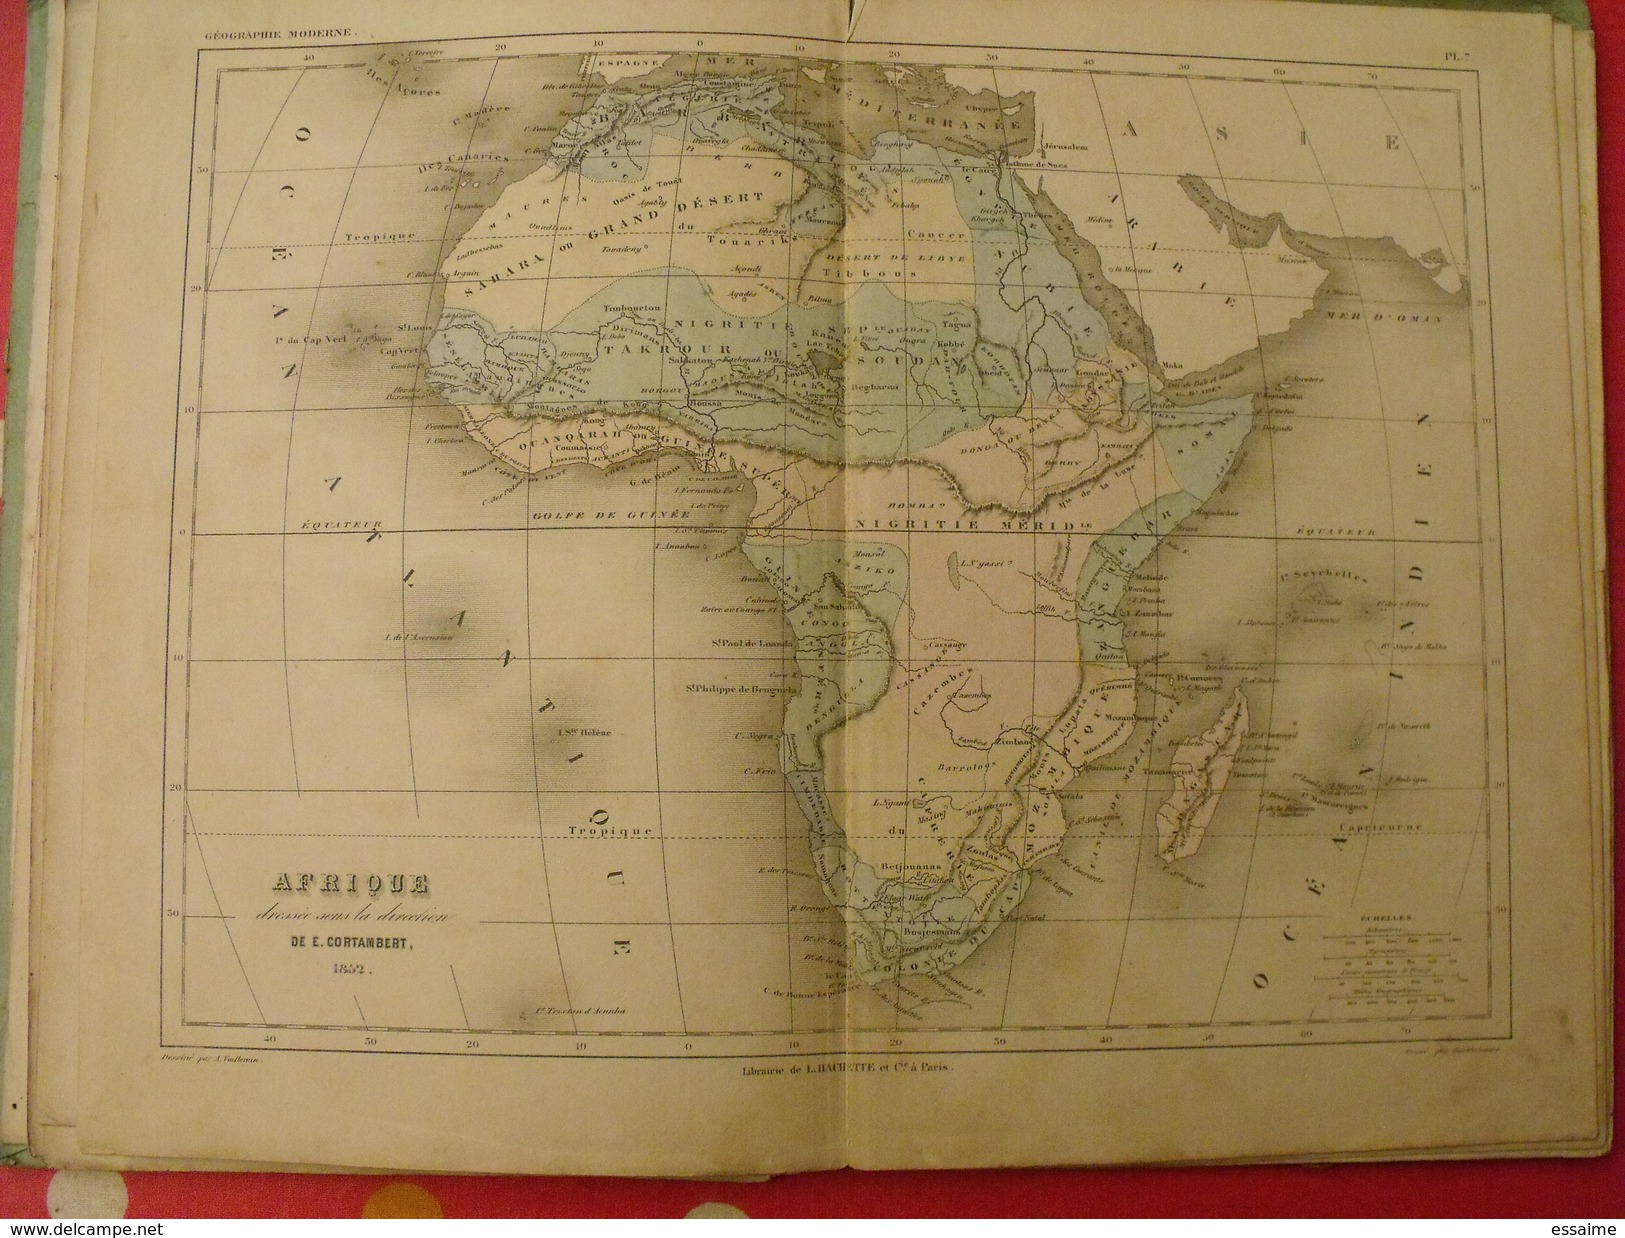 petit atlas de géographie. Cortambert. Hachette 1852. 12 planches en couleurs.